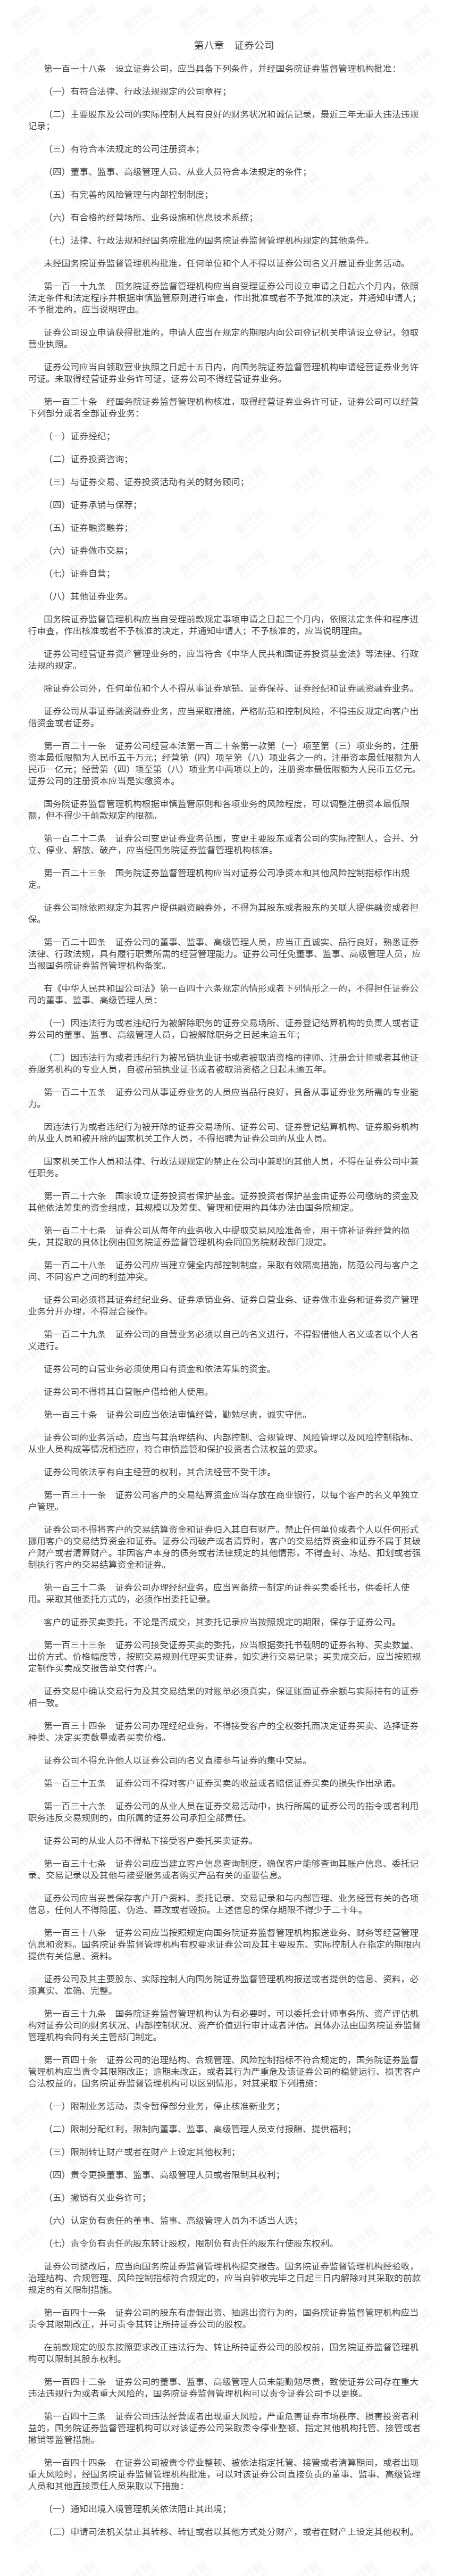 中华人民共和国证券法8.png